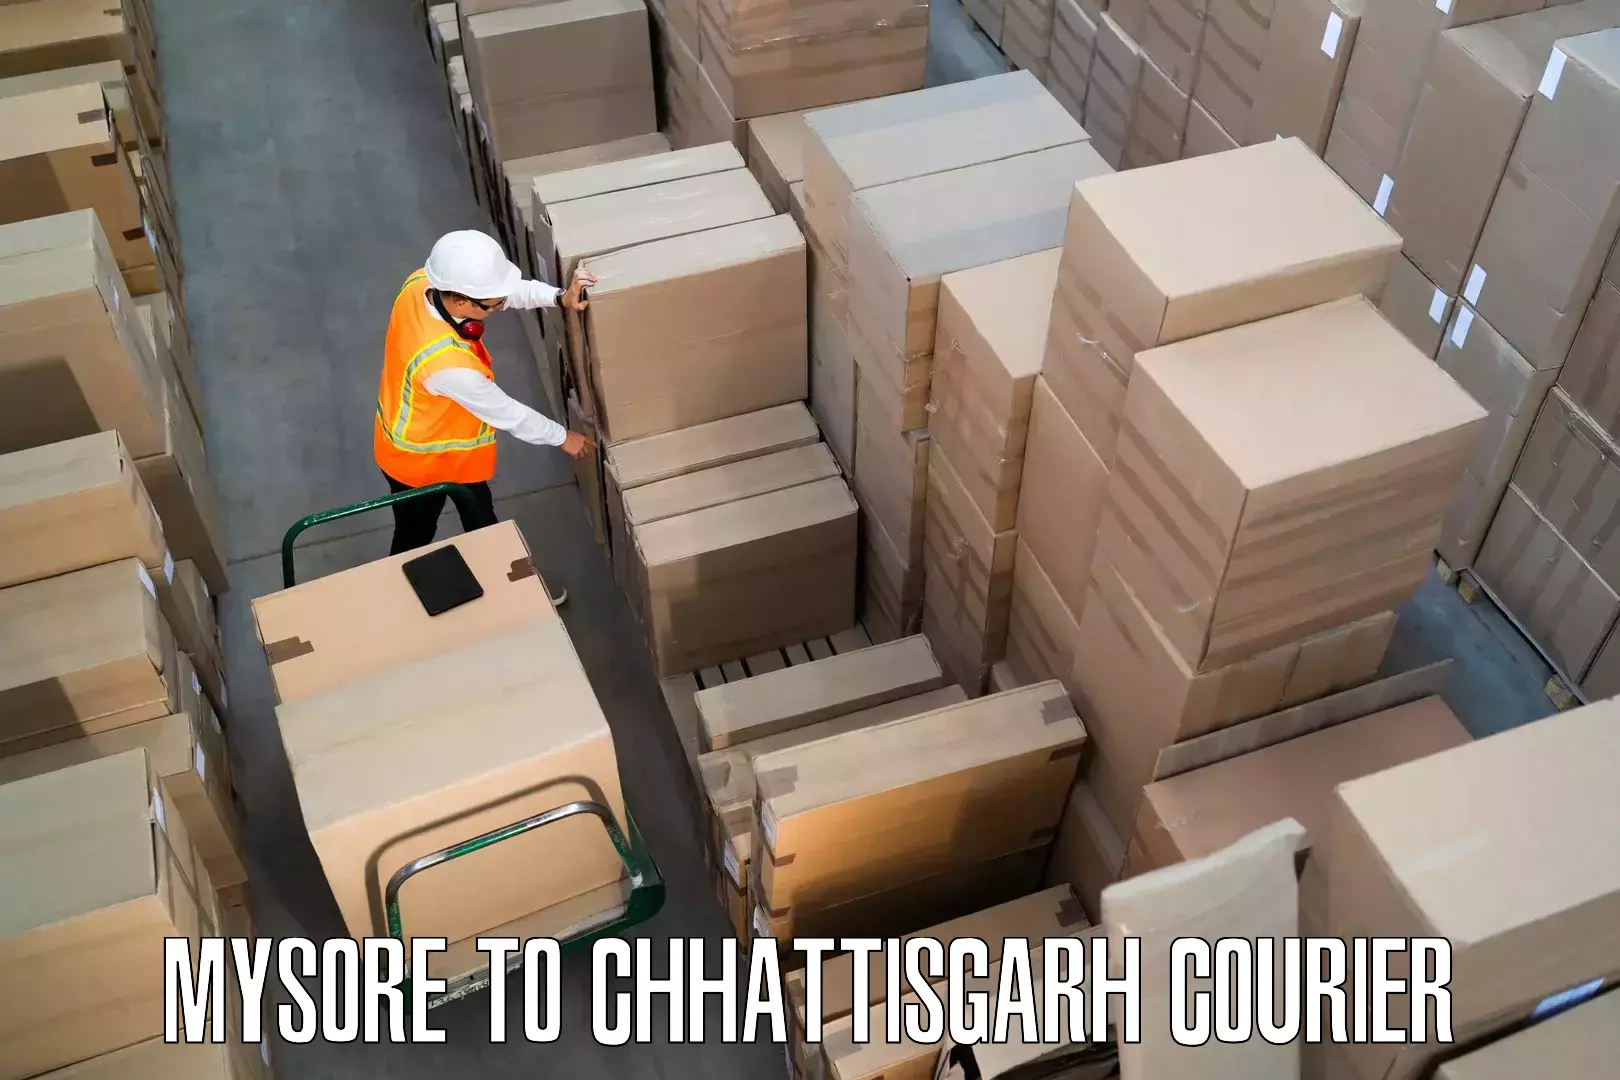 Furniture delivery service Mysore to Chhattisgarh